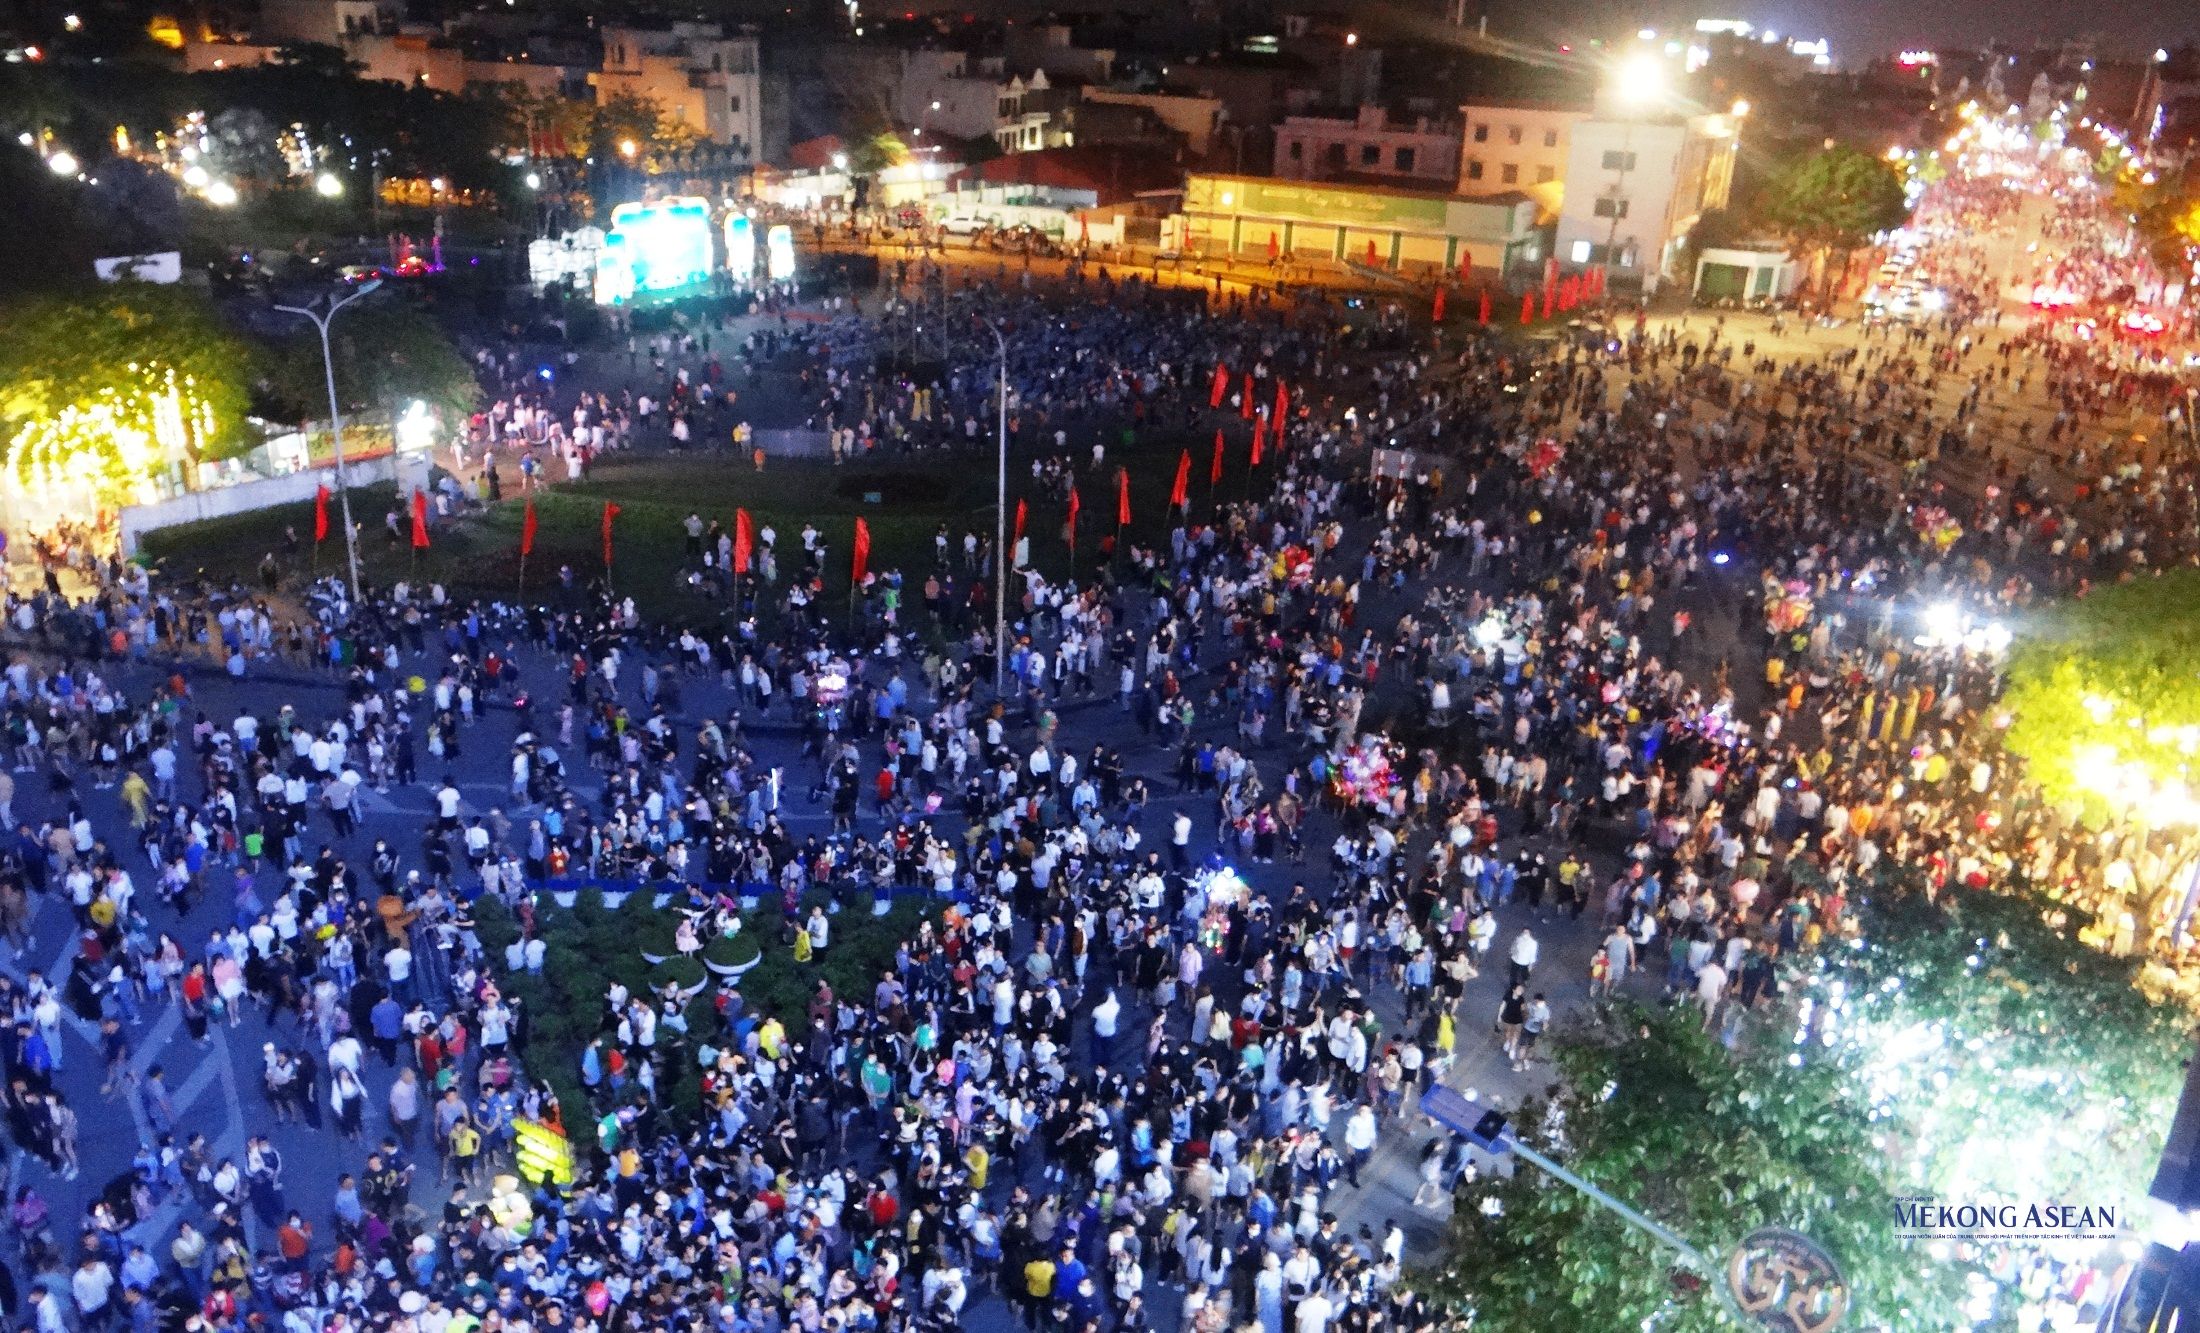 Tưng bừng khai trương phố đi bộ - chợ đêm khu vực đường Bạch Đằng, thành phố Hải Dương